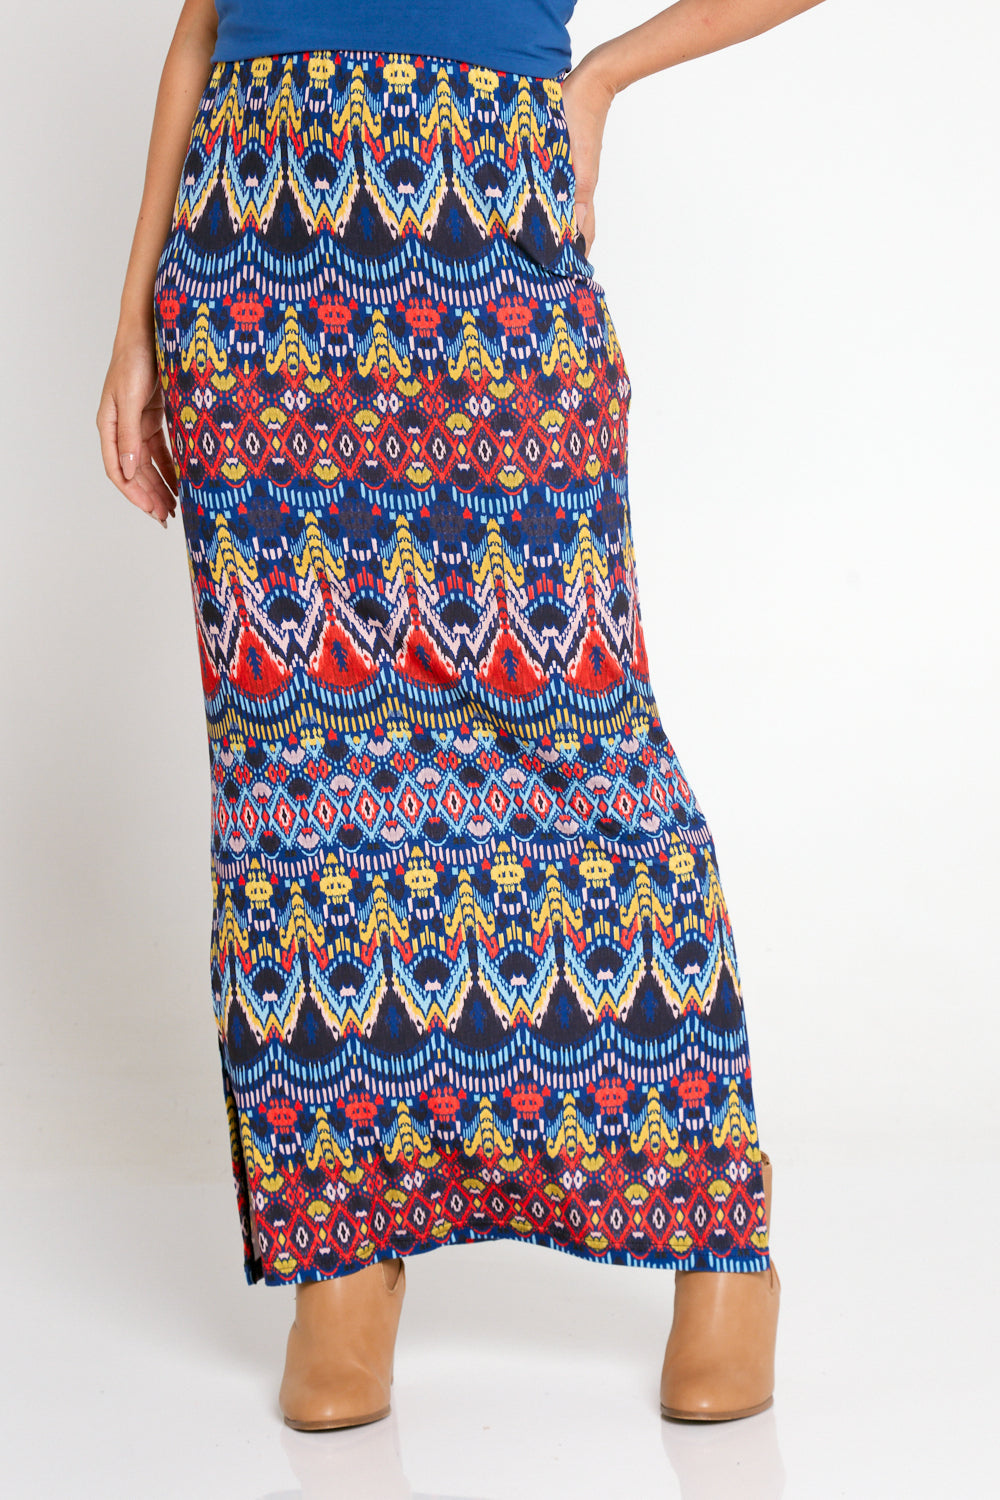 Adelaide Skirt - Aztec